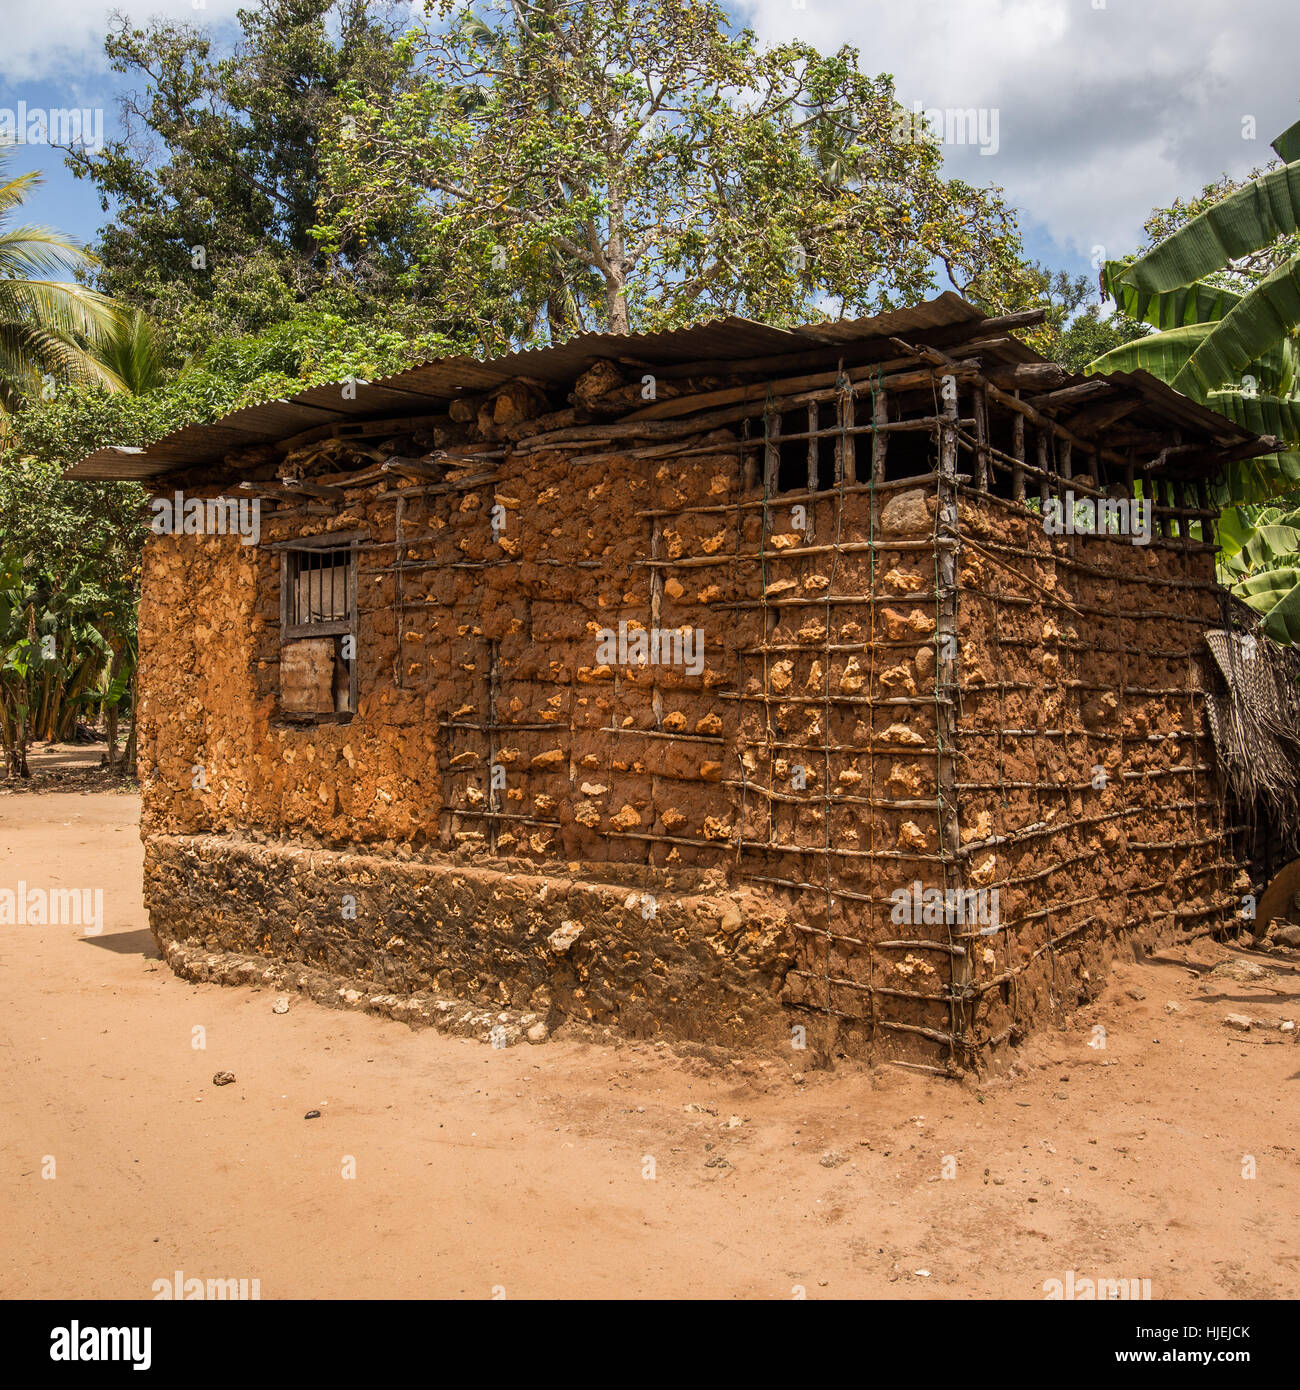 Primitive Häuschen mit Stahlblech-Dach, gebaut von lokalen Ureinwohner, ausgefertigt von Holzstäbchen und roter Erde (keine Ziegel), Uzi Island, Zanzibar, Tan Stockfoto